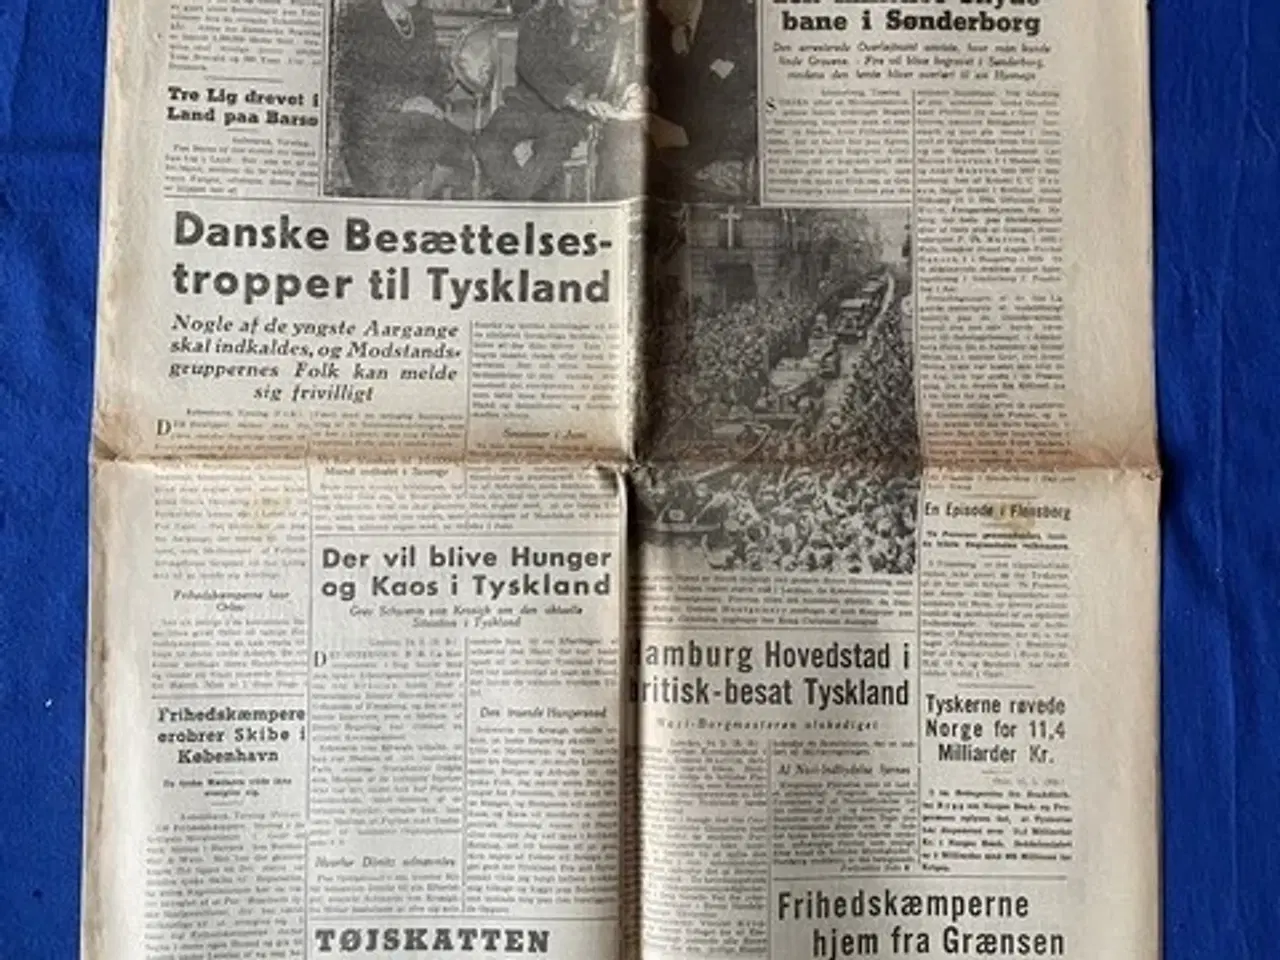 Billede 1 - Avis - Heimdal - 15. Maj 1945 - 5 Frihedskæmperes grave fundet 1